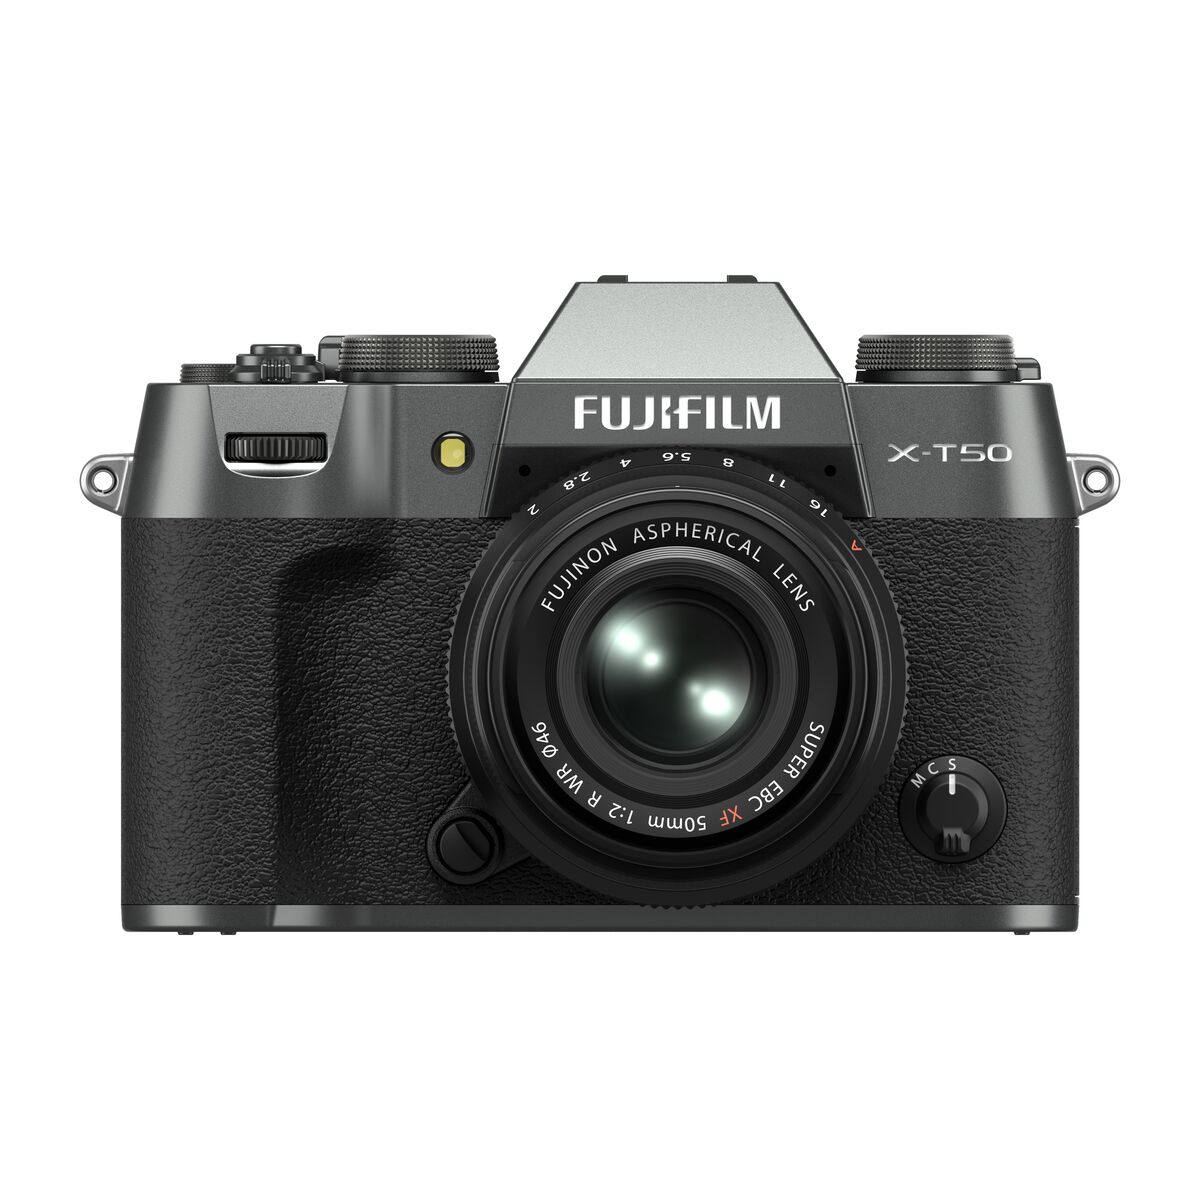 Fujifilm x-t50 main